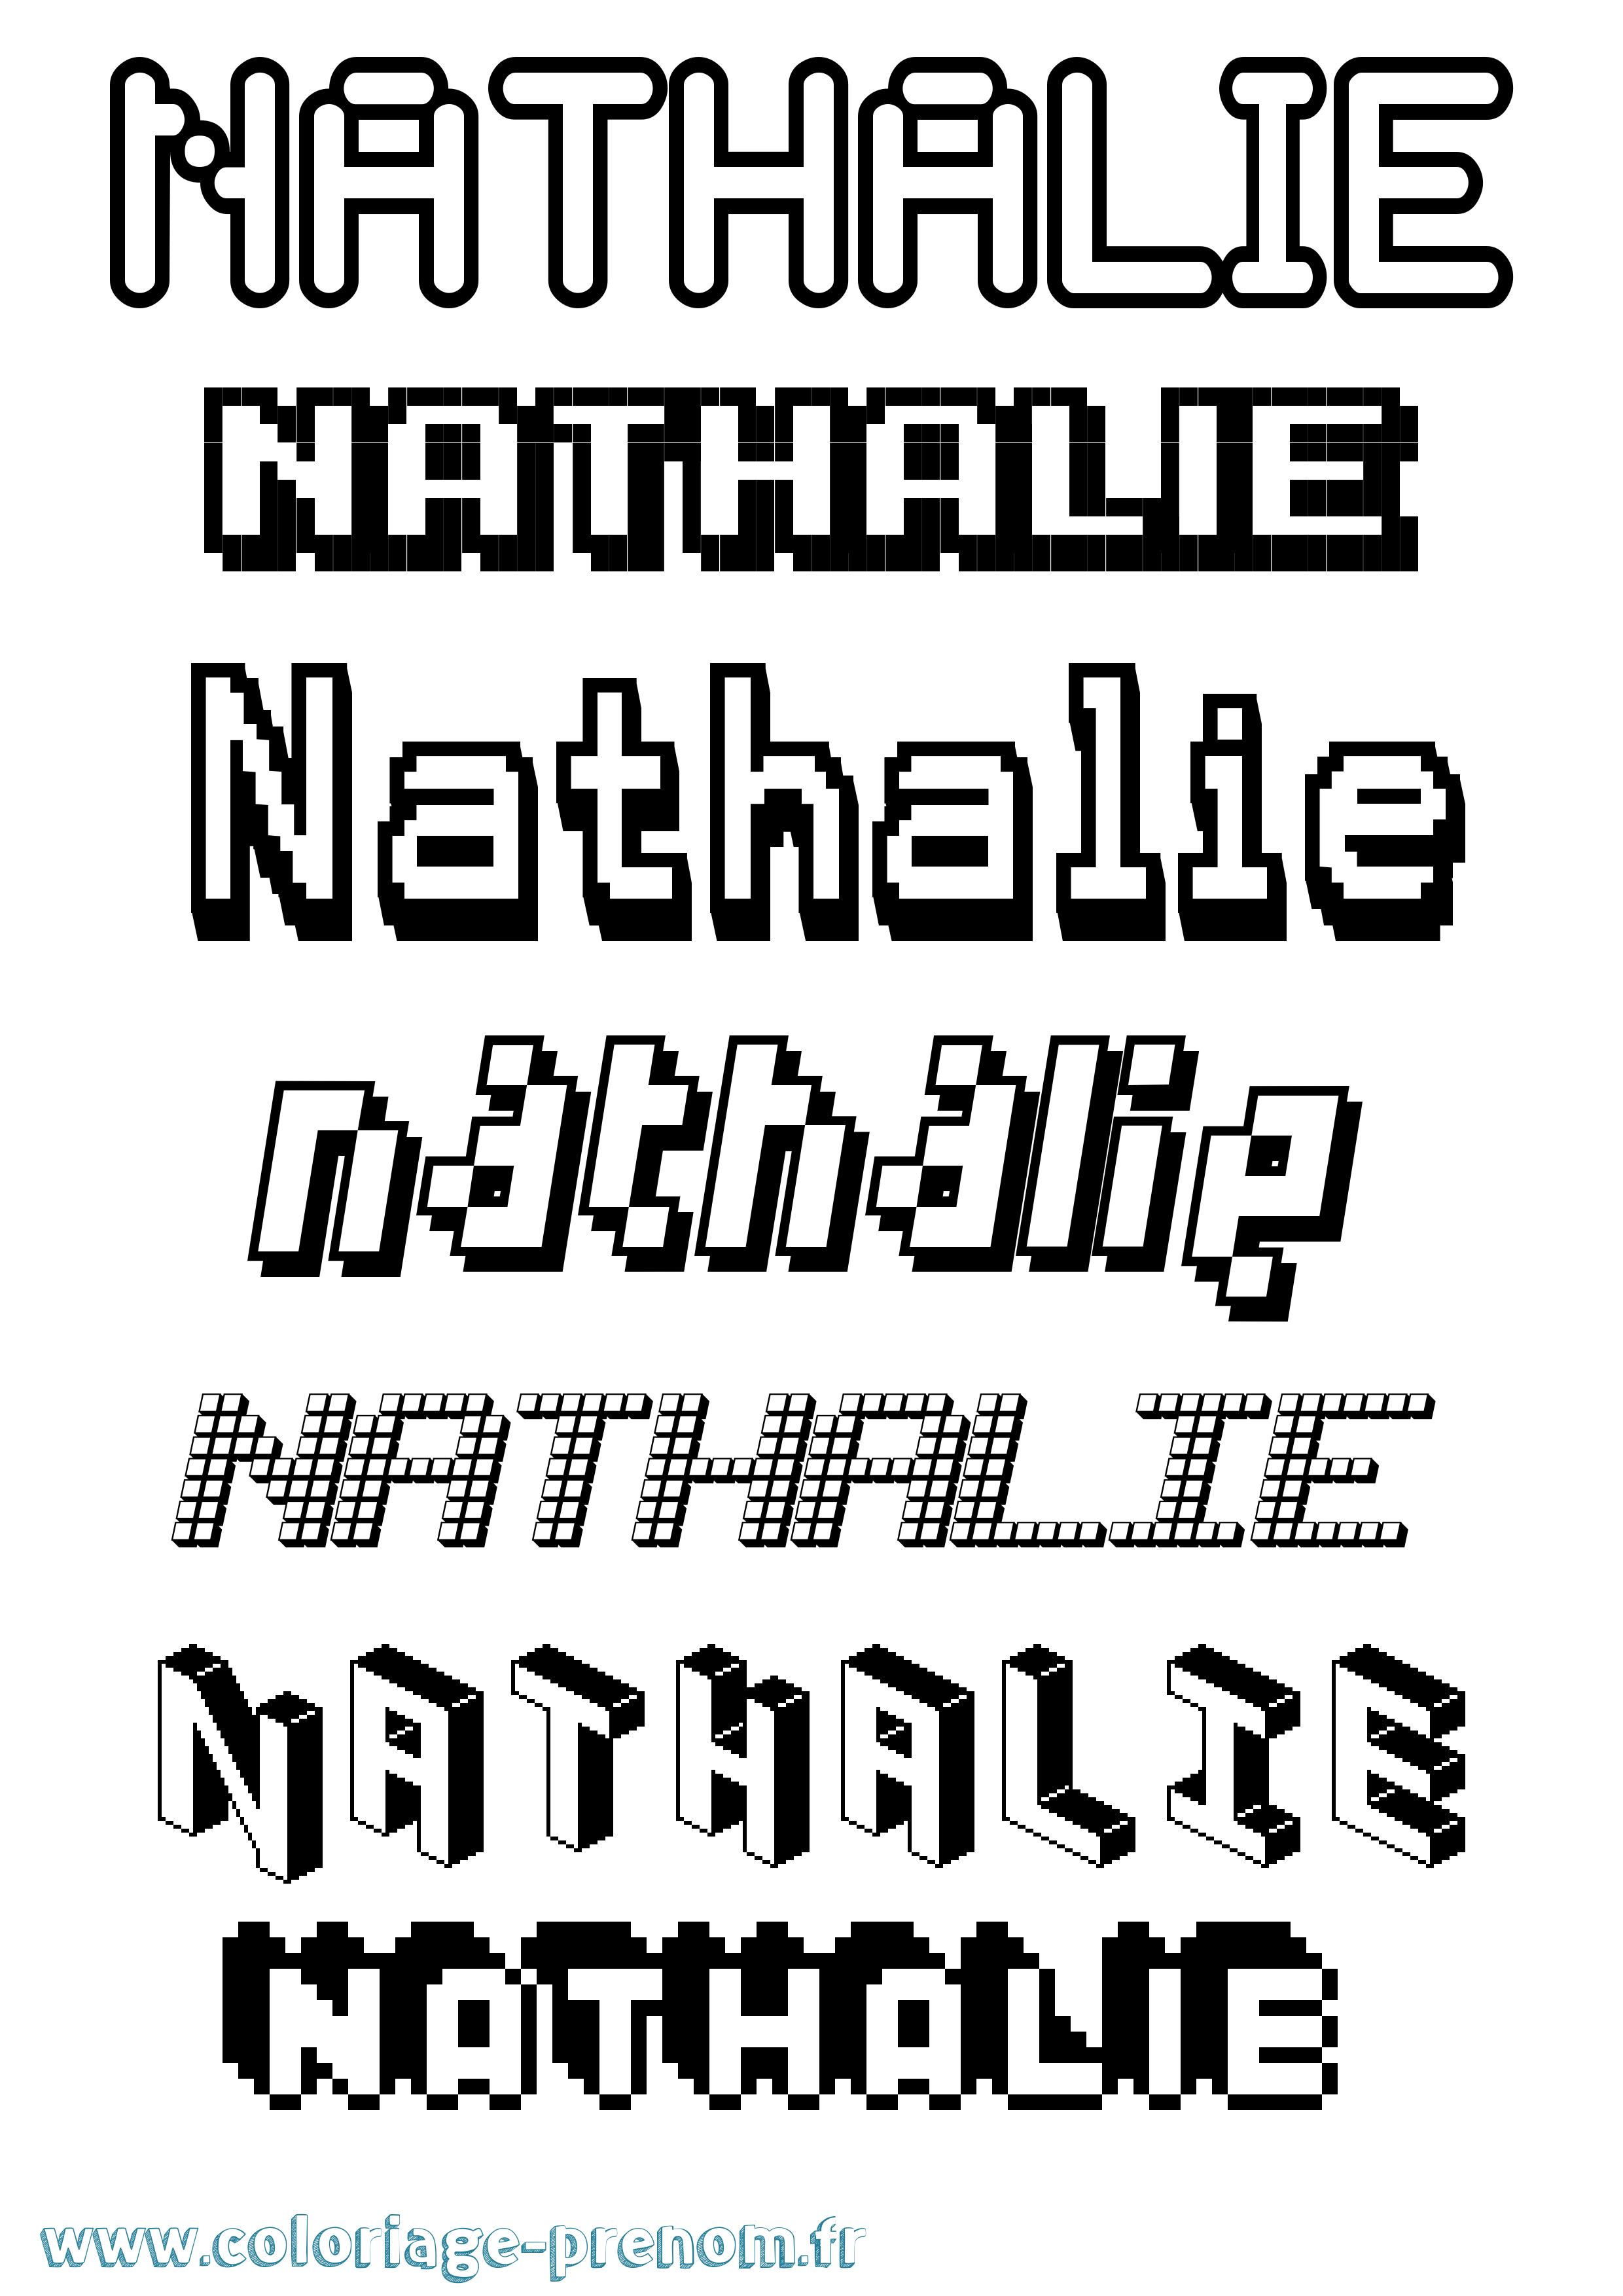 Coloriage prénom Nathalie Pixel